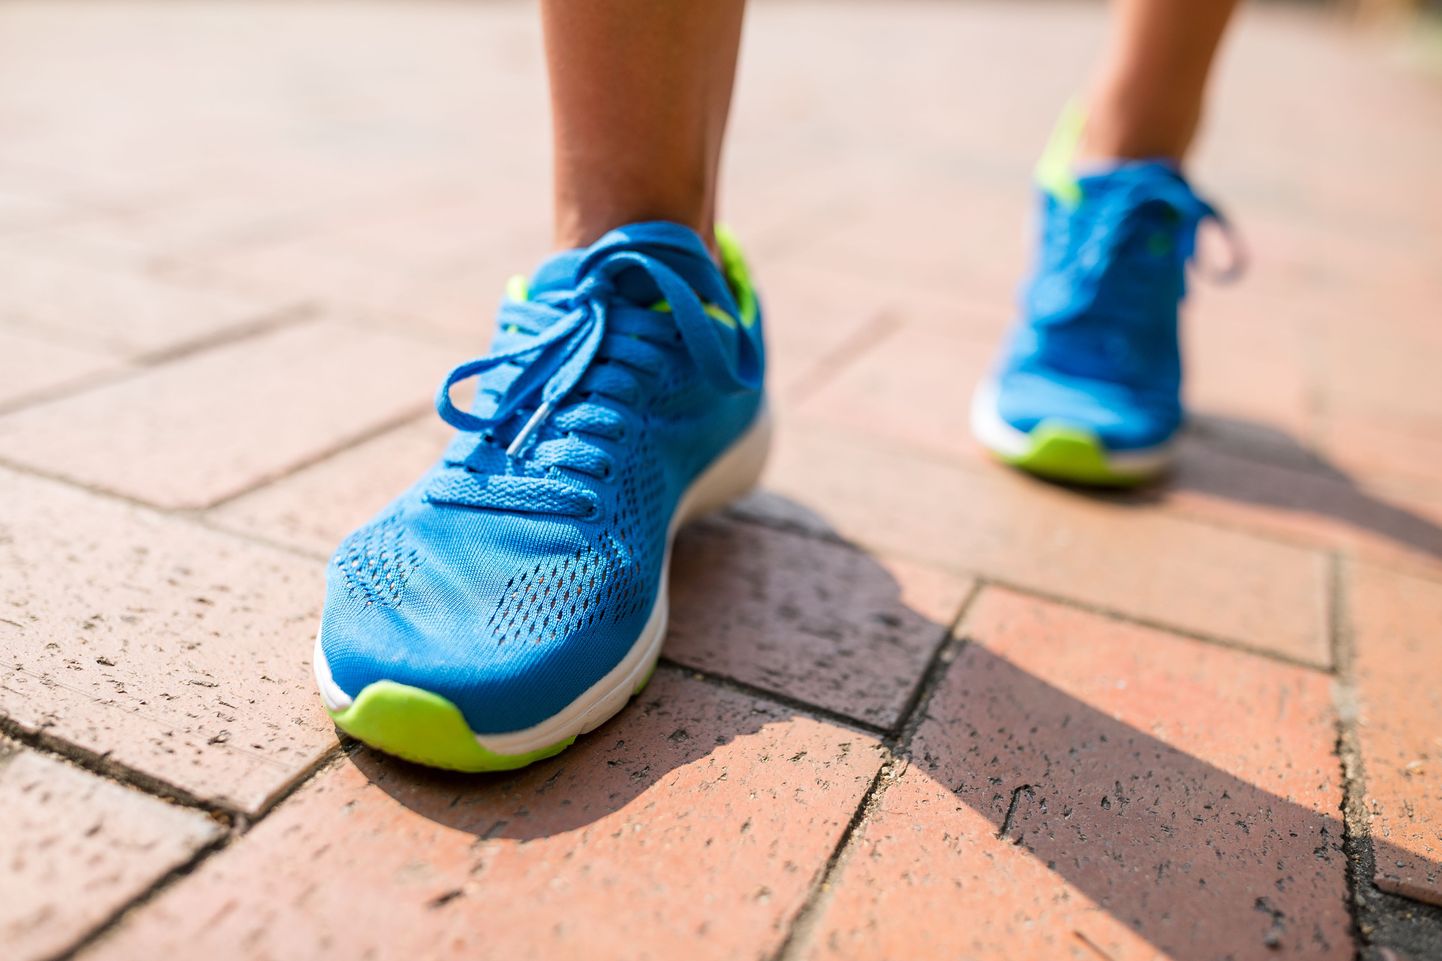 Jooksmine kulutab energiat ja võib tekitada teadlaste sõnul neerudes stressi.